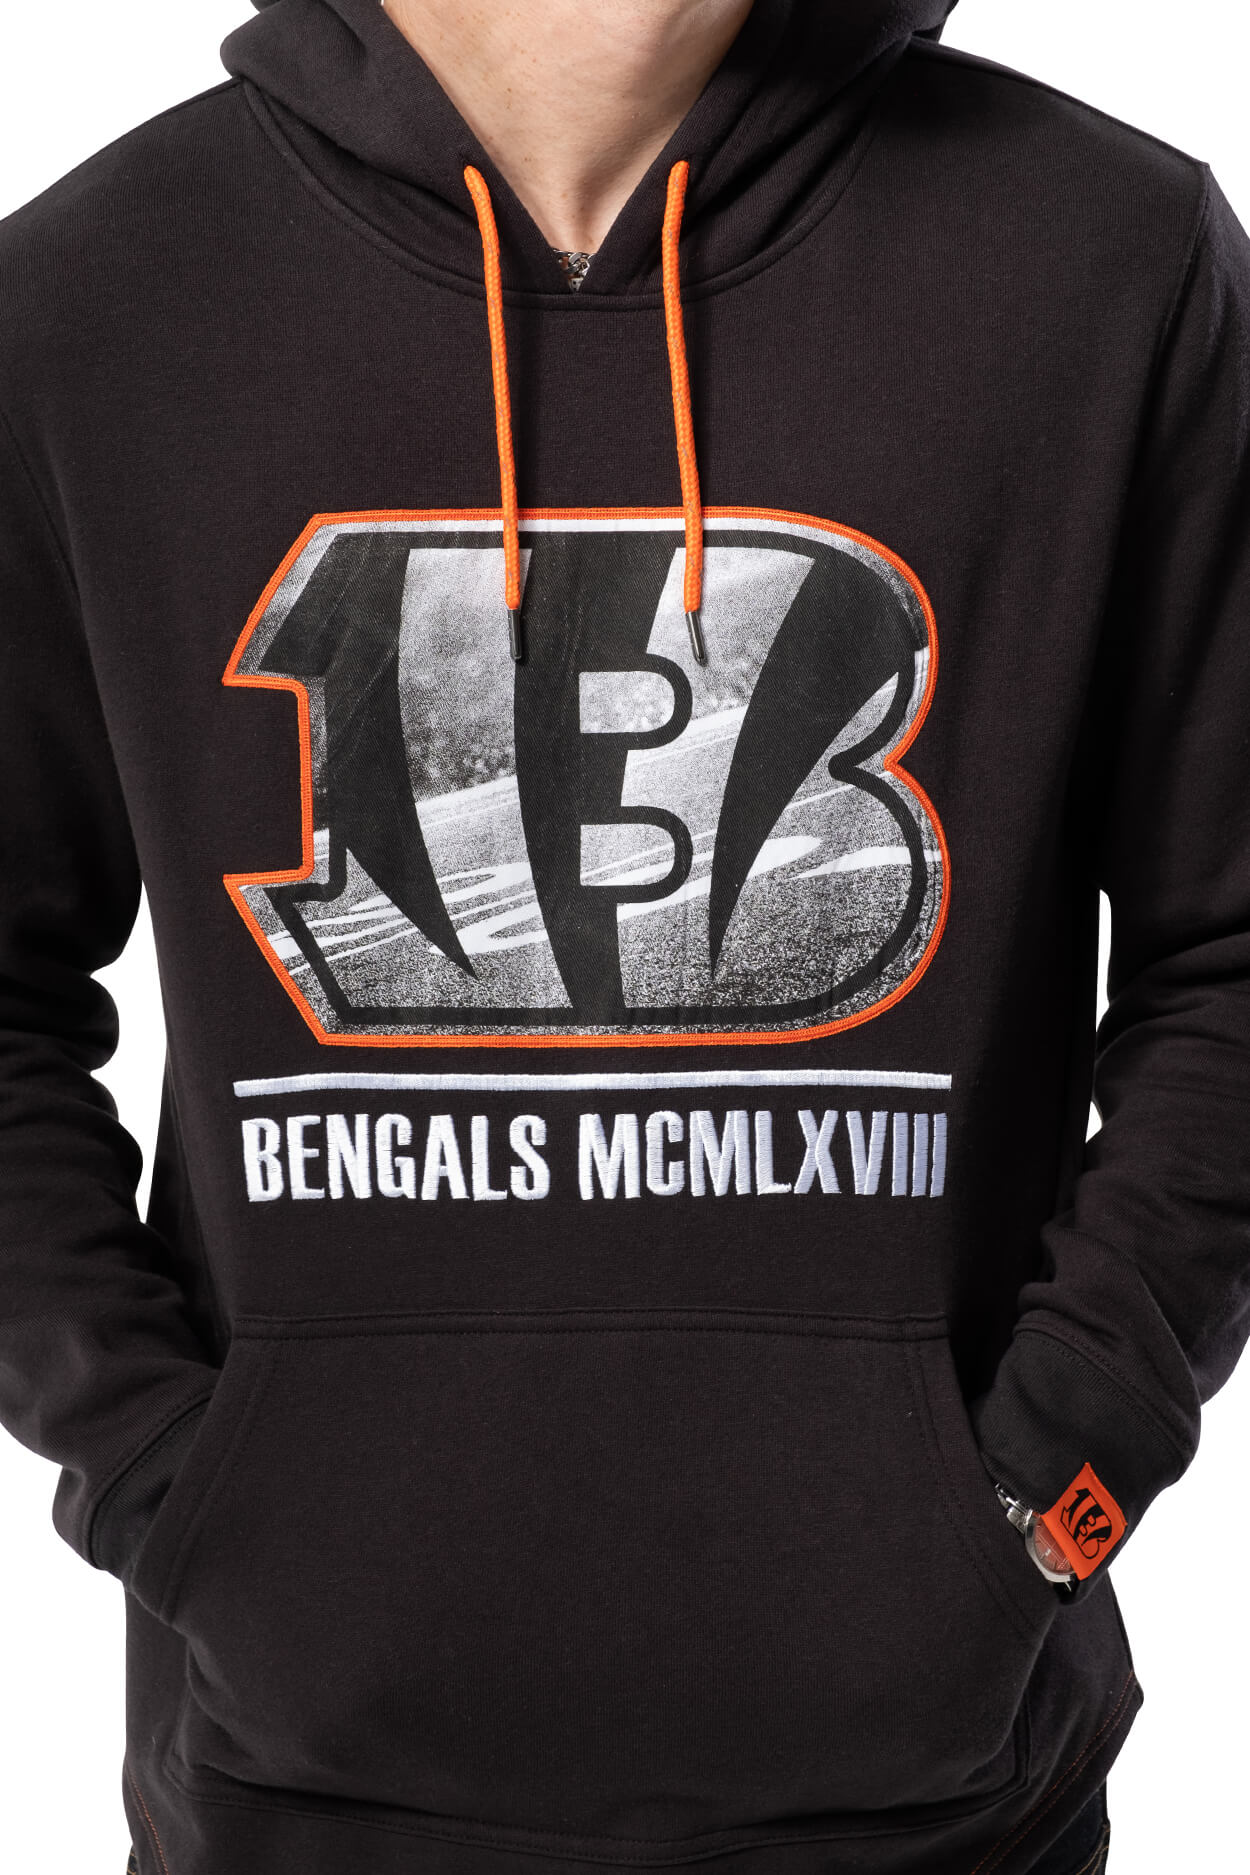 NFL Cincinnati Bengals Men's Embroidered Hoodie|Cincinnati Bengals